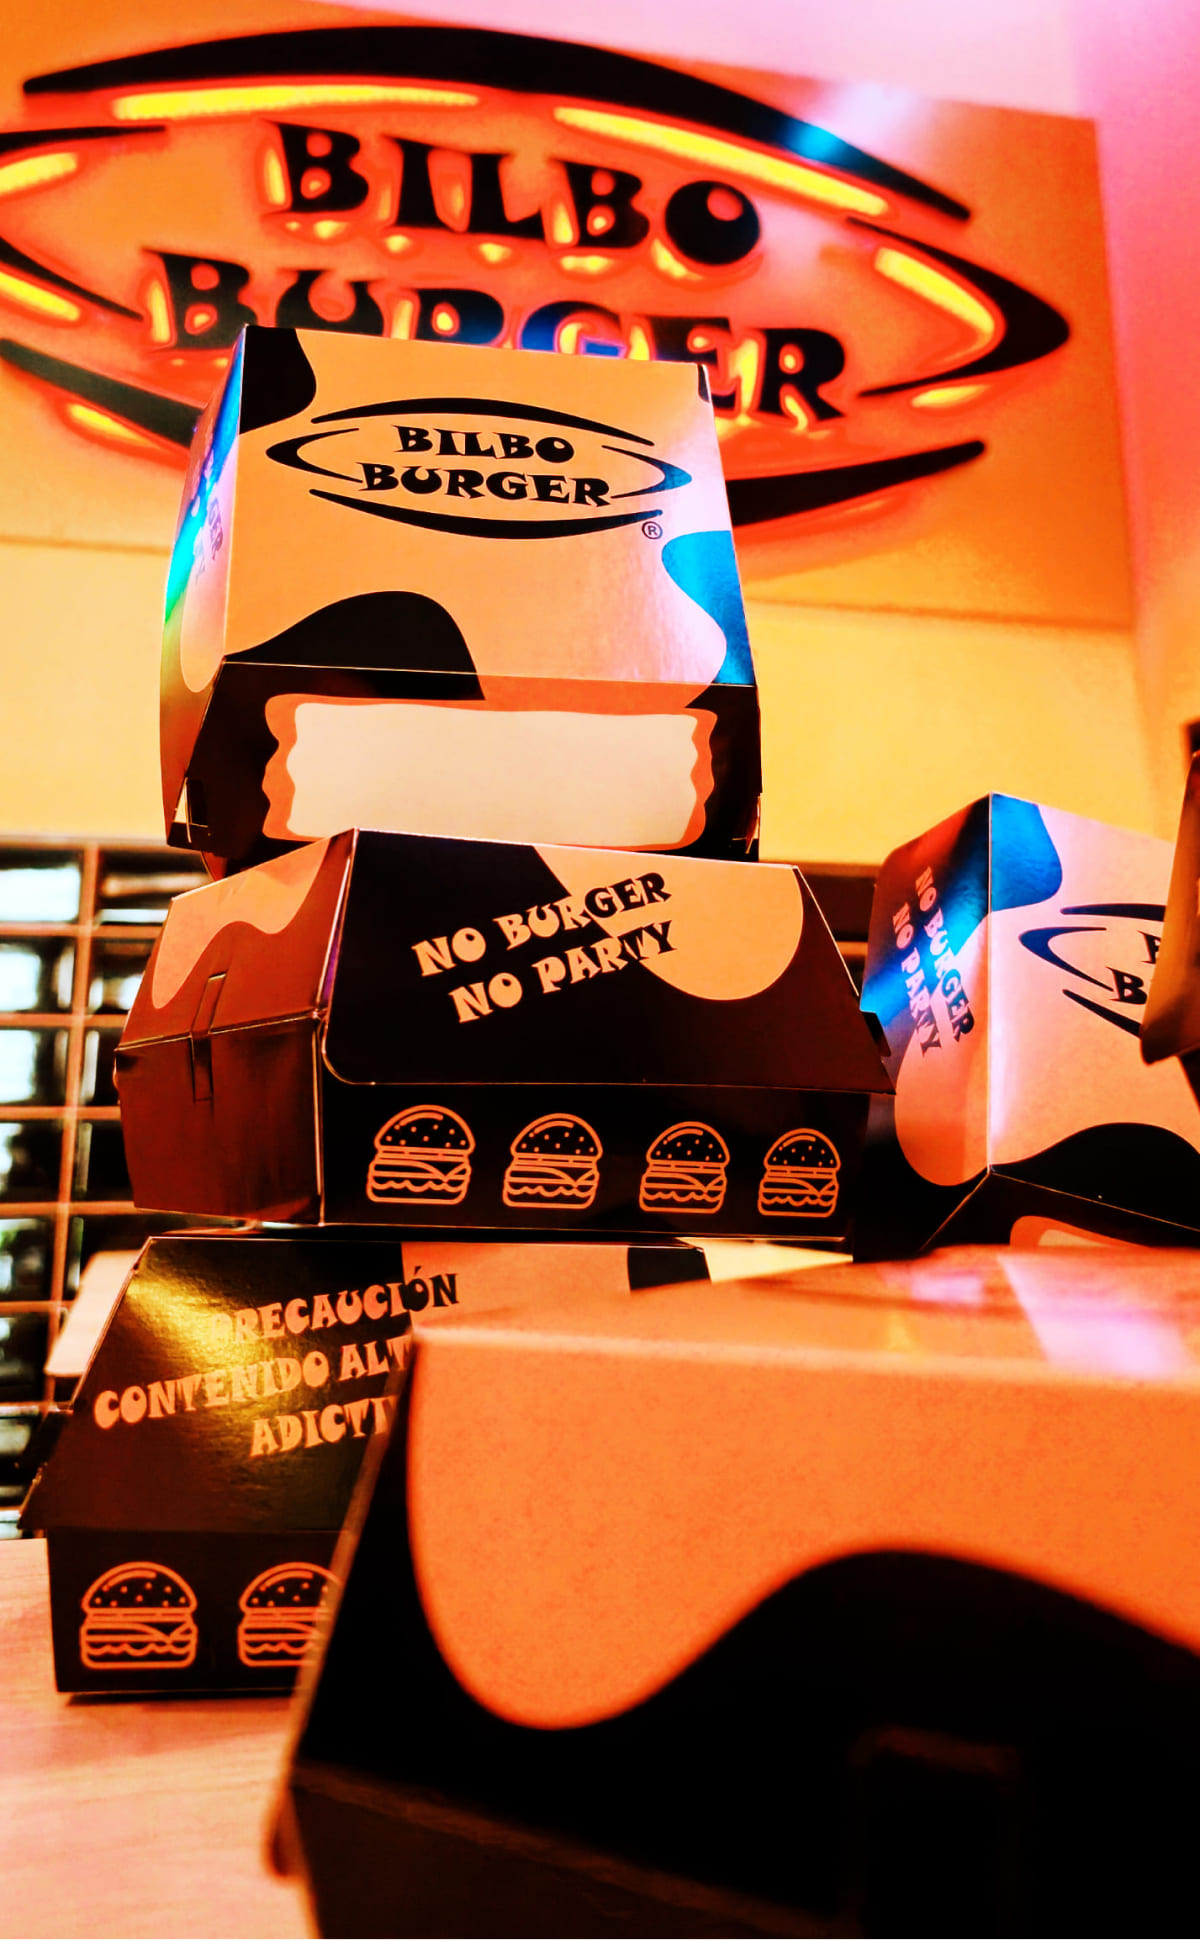 Cajas de hamburguesa de Bilboburger apiladas artísticamente con lemas divertidos como 'No Burger No Party', bajo el luminoso letrero de neón de Bilboburger, capturando la esencia de la diversión y el sabor que ofrece la marca.